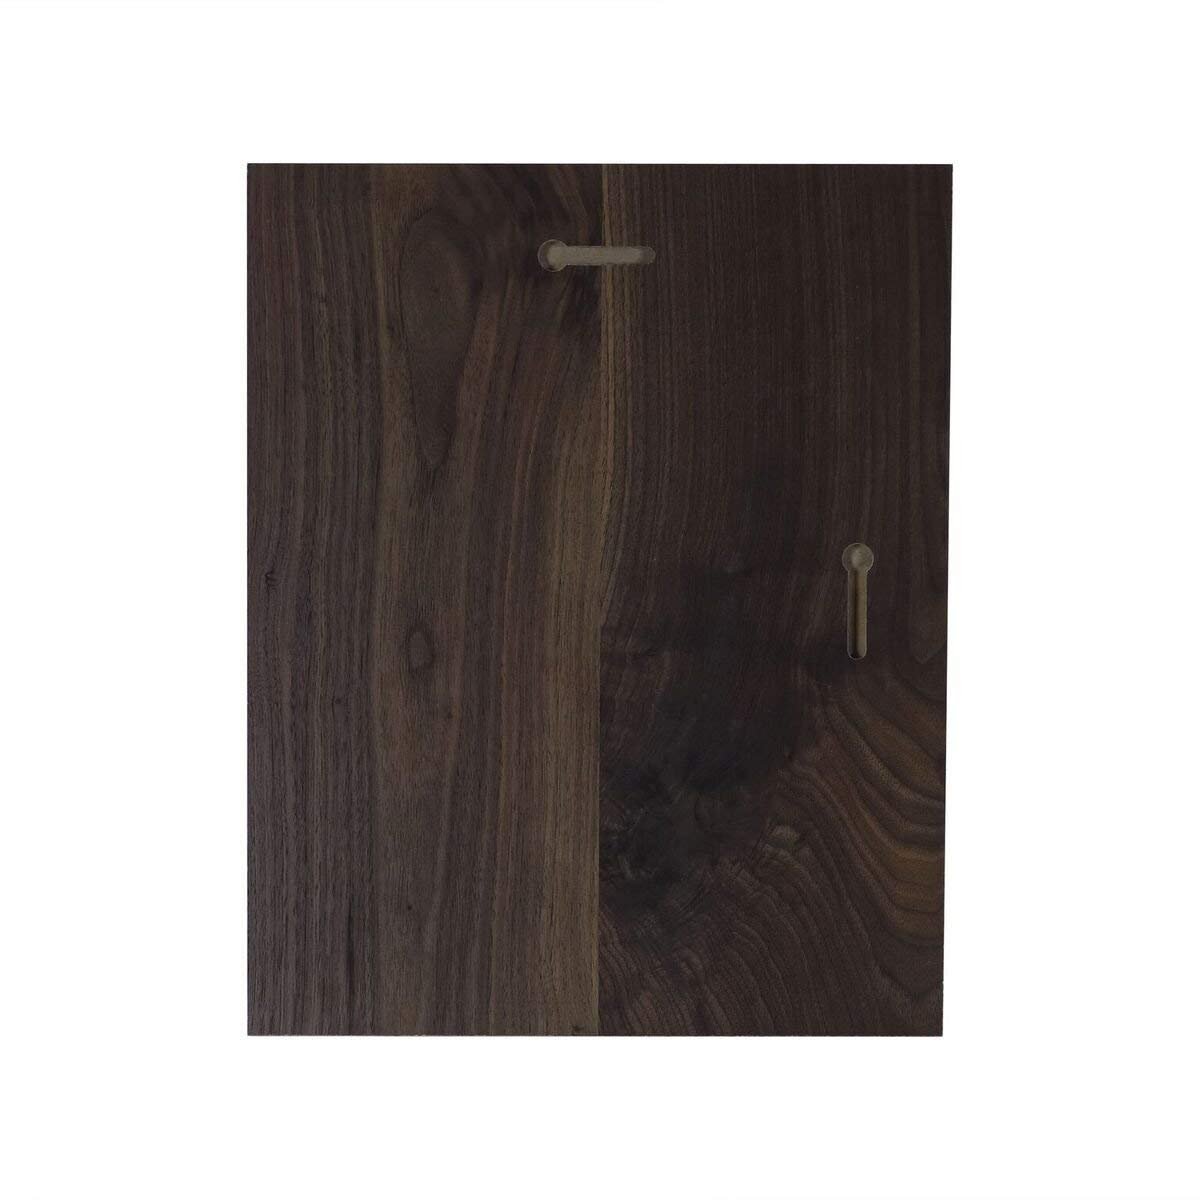 Memorial Wooden Wall Plaque - The Broken Chain - LifeSong Milestones